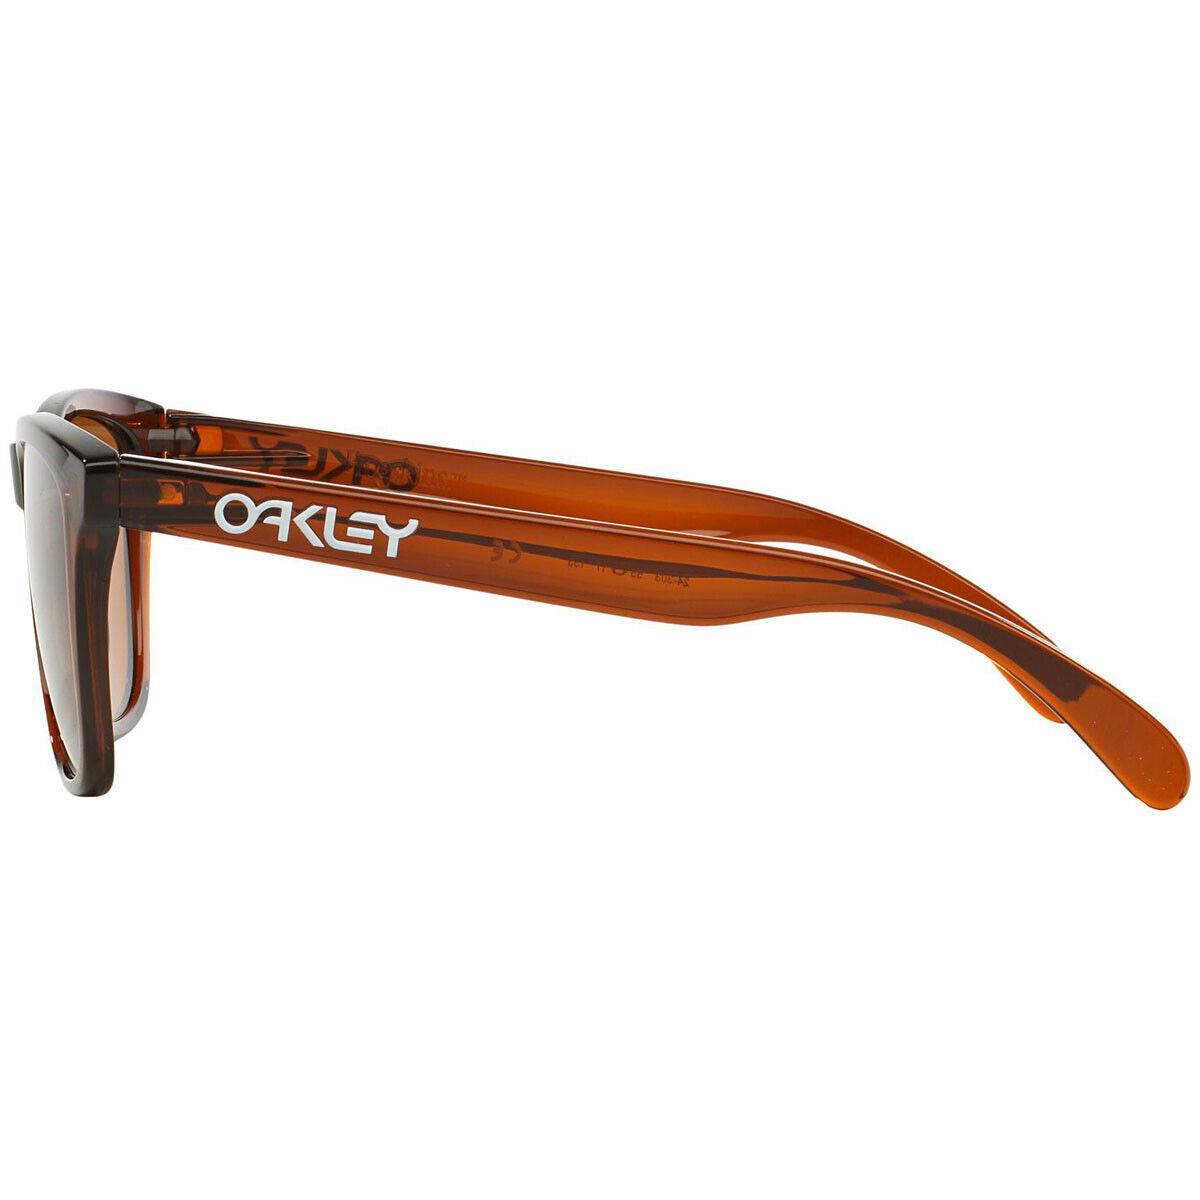 Oakley sunglasses Frogskins - Frame: , Lens: Brown 0